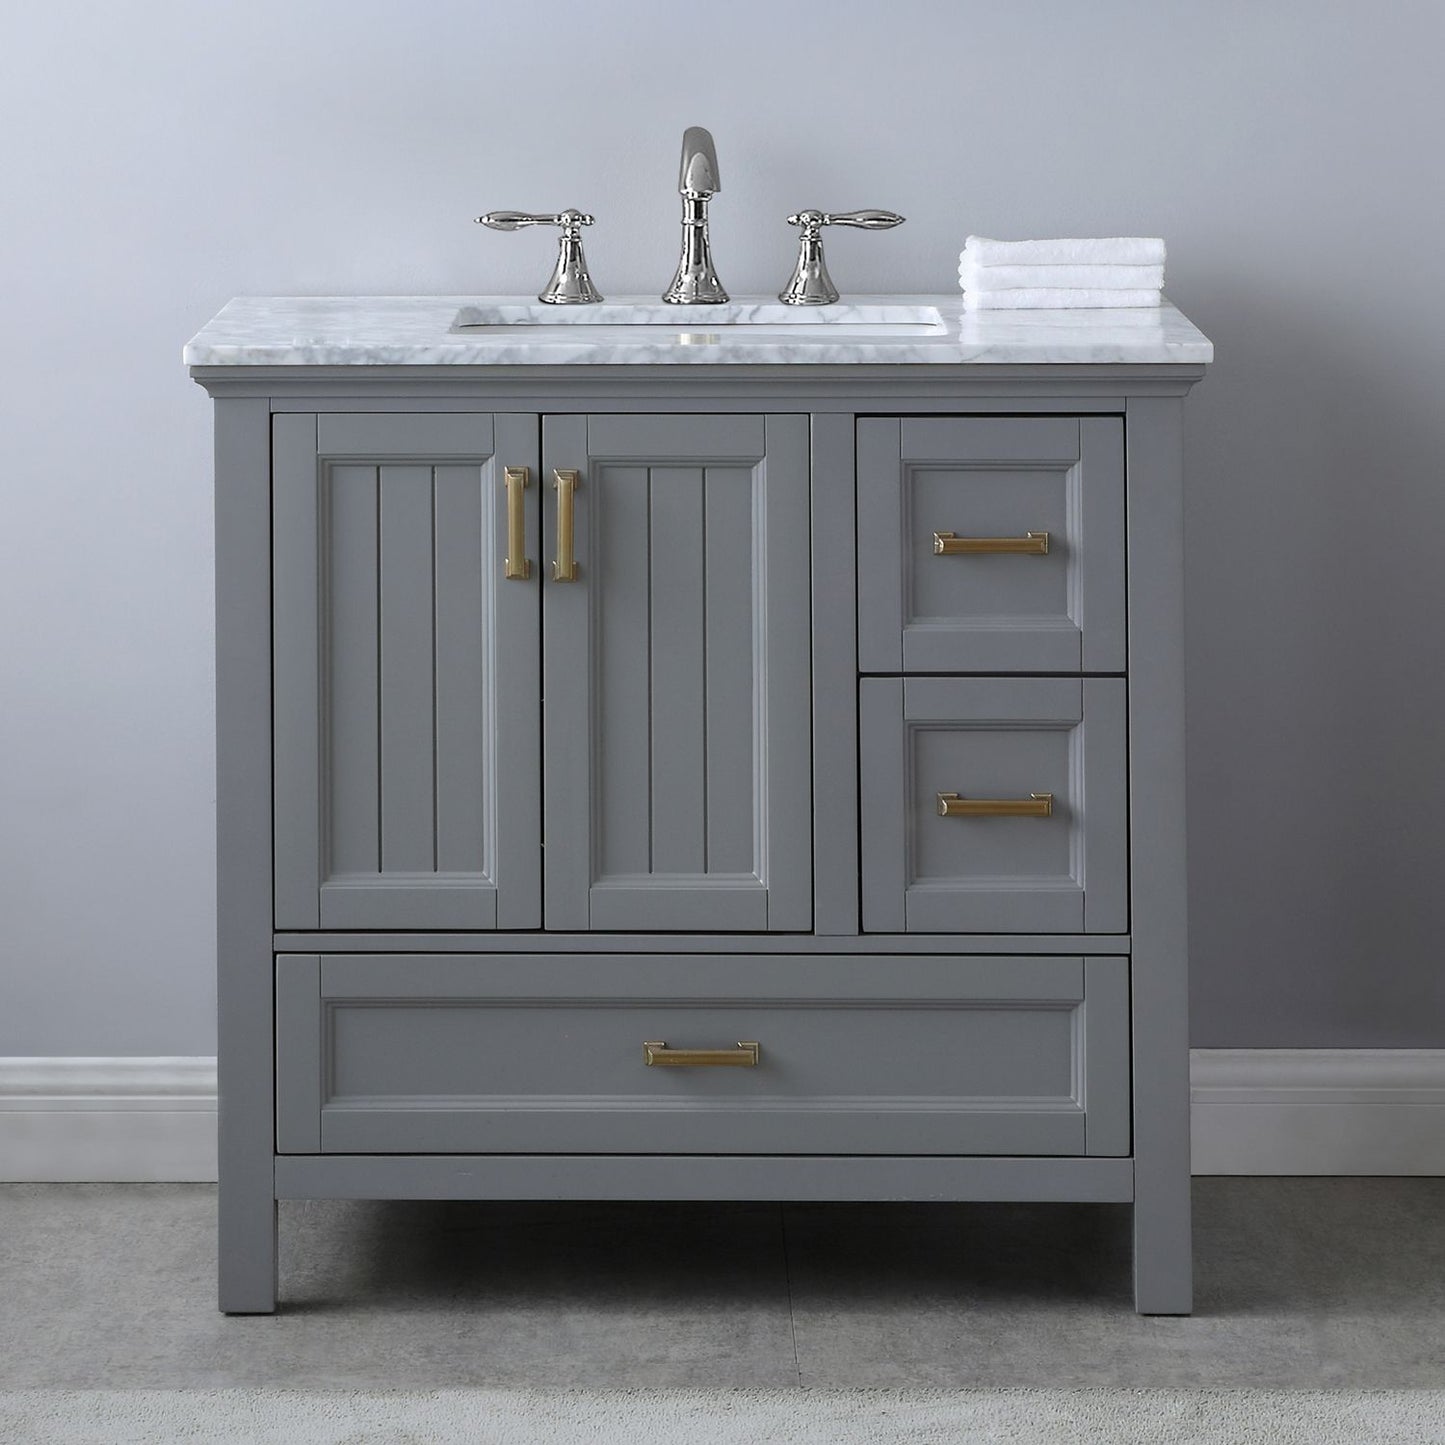 Altair Isla 36" Single Bathroom Vanity Set Countertop without Mirror - Luxe Bathroom Vanities